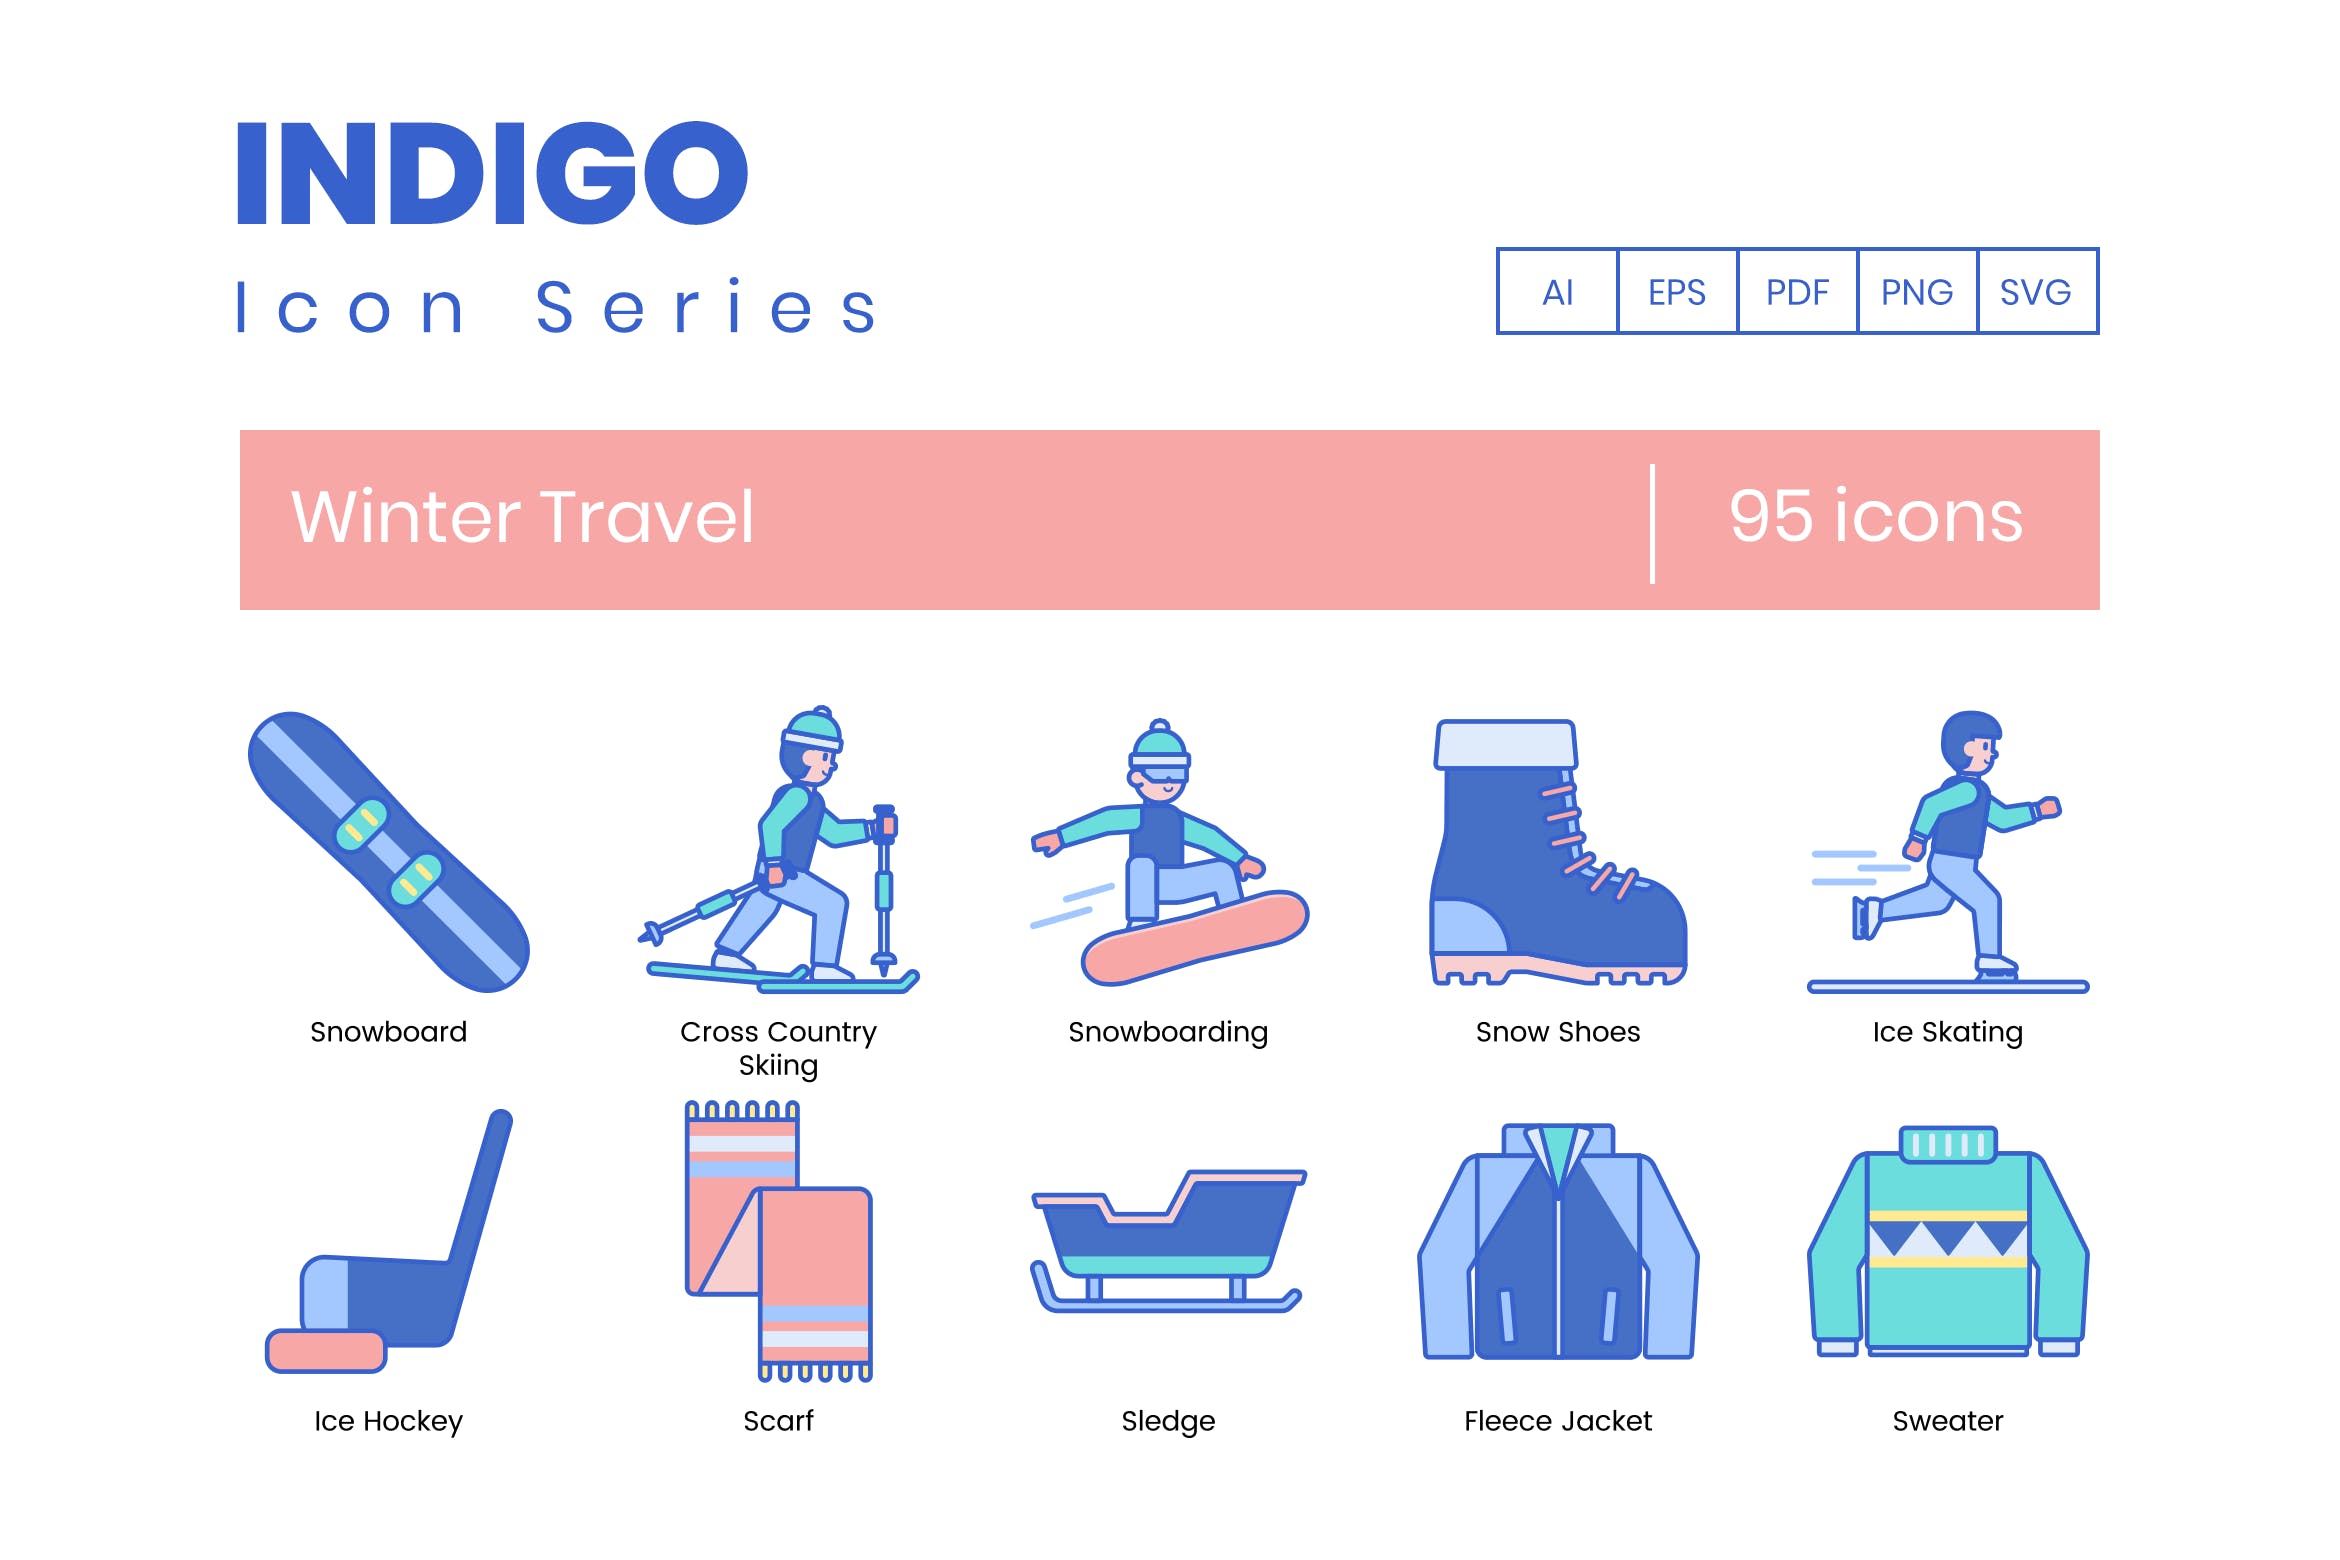 95枚靛蓝配色冬季旅行主题矢量蚂蚁素材精选图标合集 95 Winter Travel Icons | Indigo Series插图